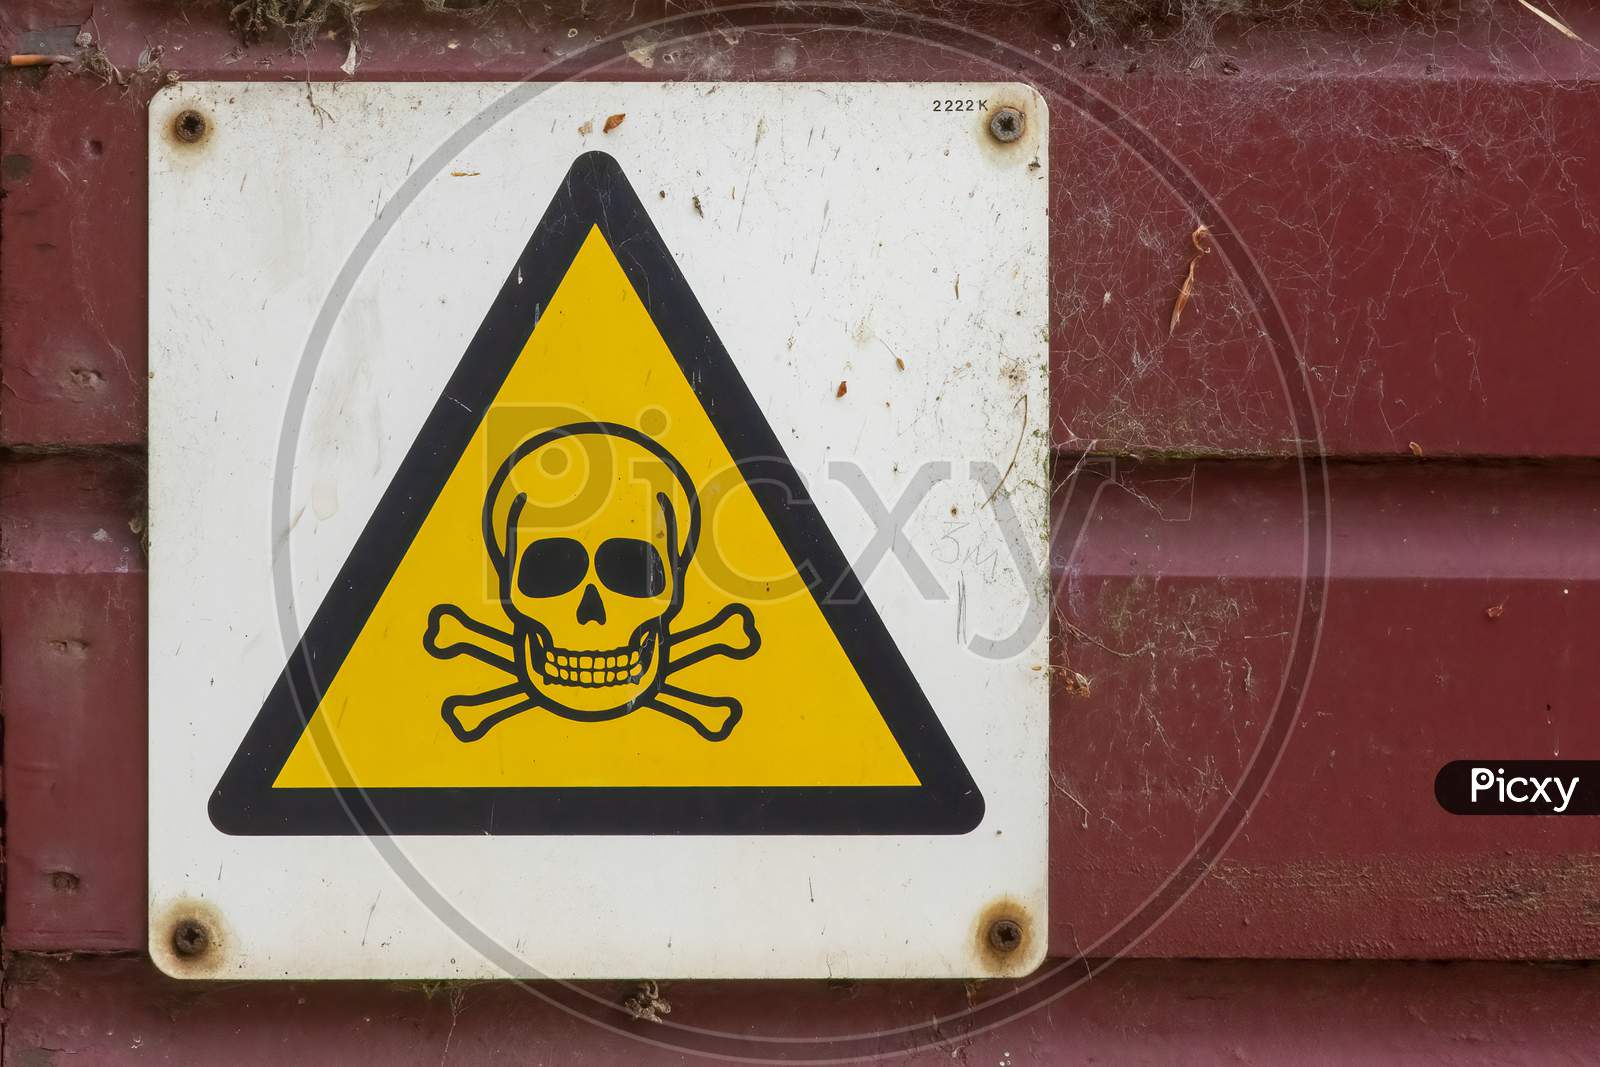 Dangerous hazard yellow warning sign on workshop door